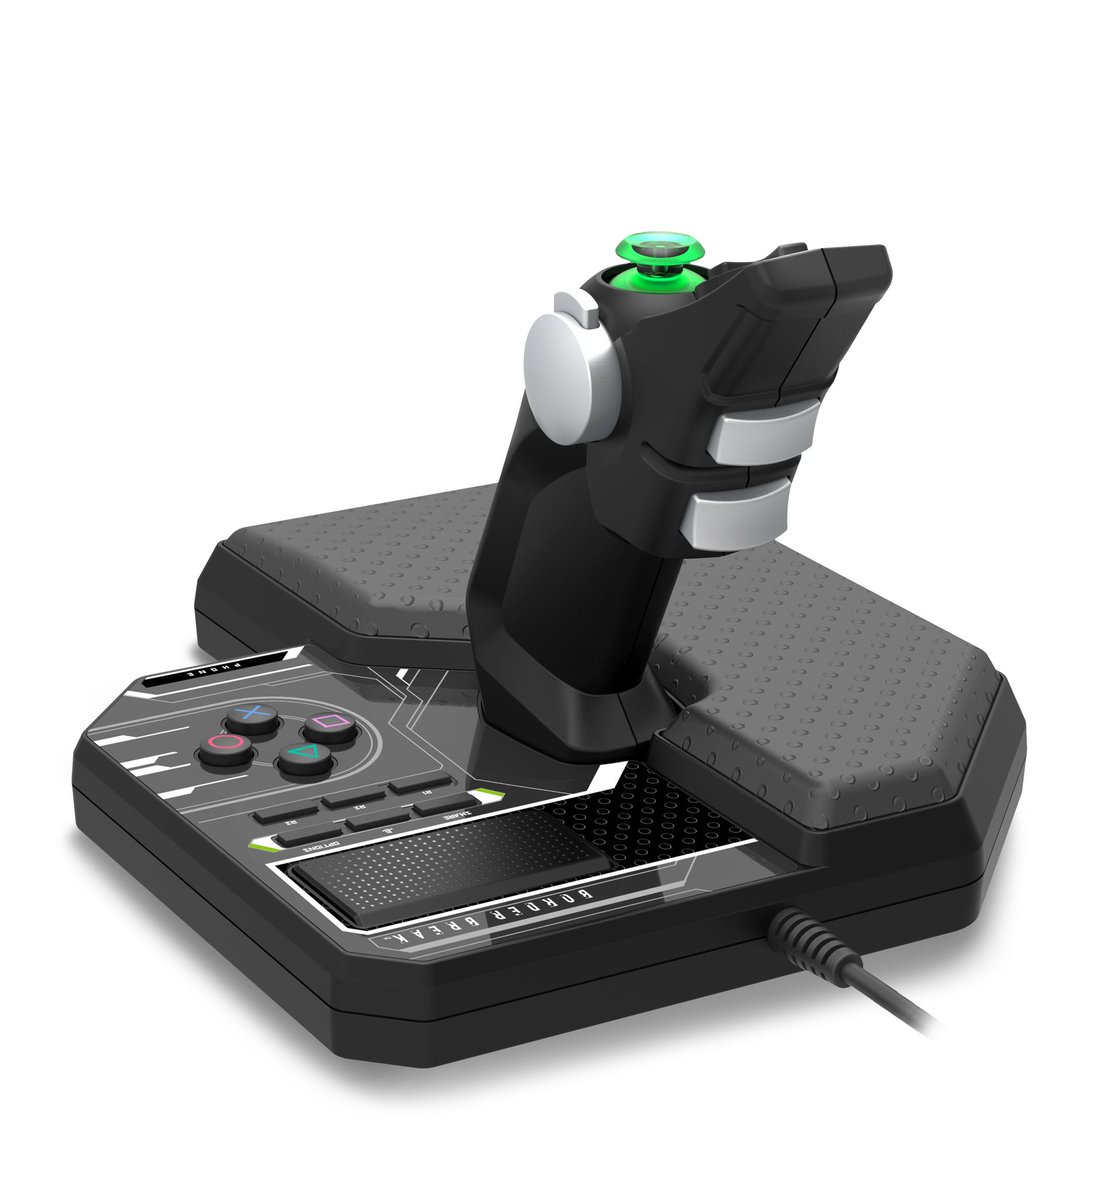 PS4 ボーダーブレイク 専用コントローラー 追加販売 HORI レザー 